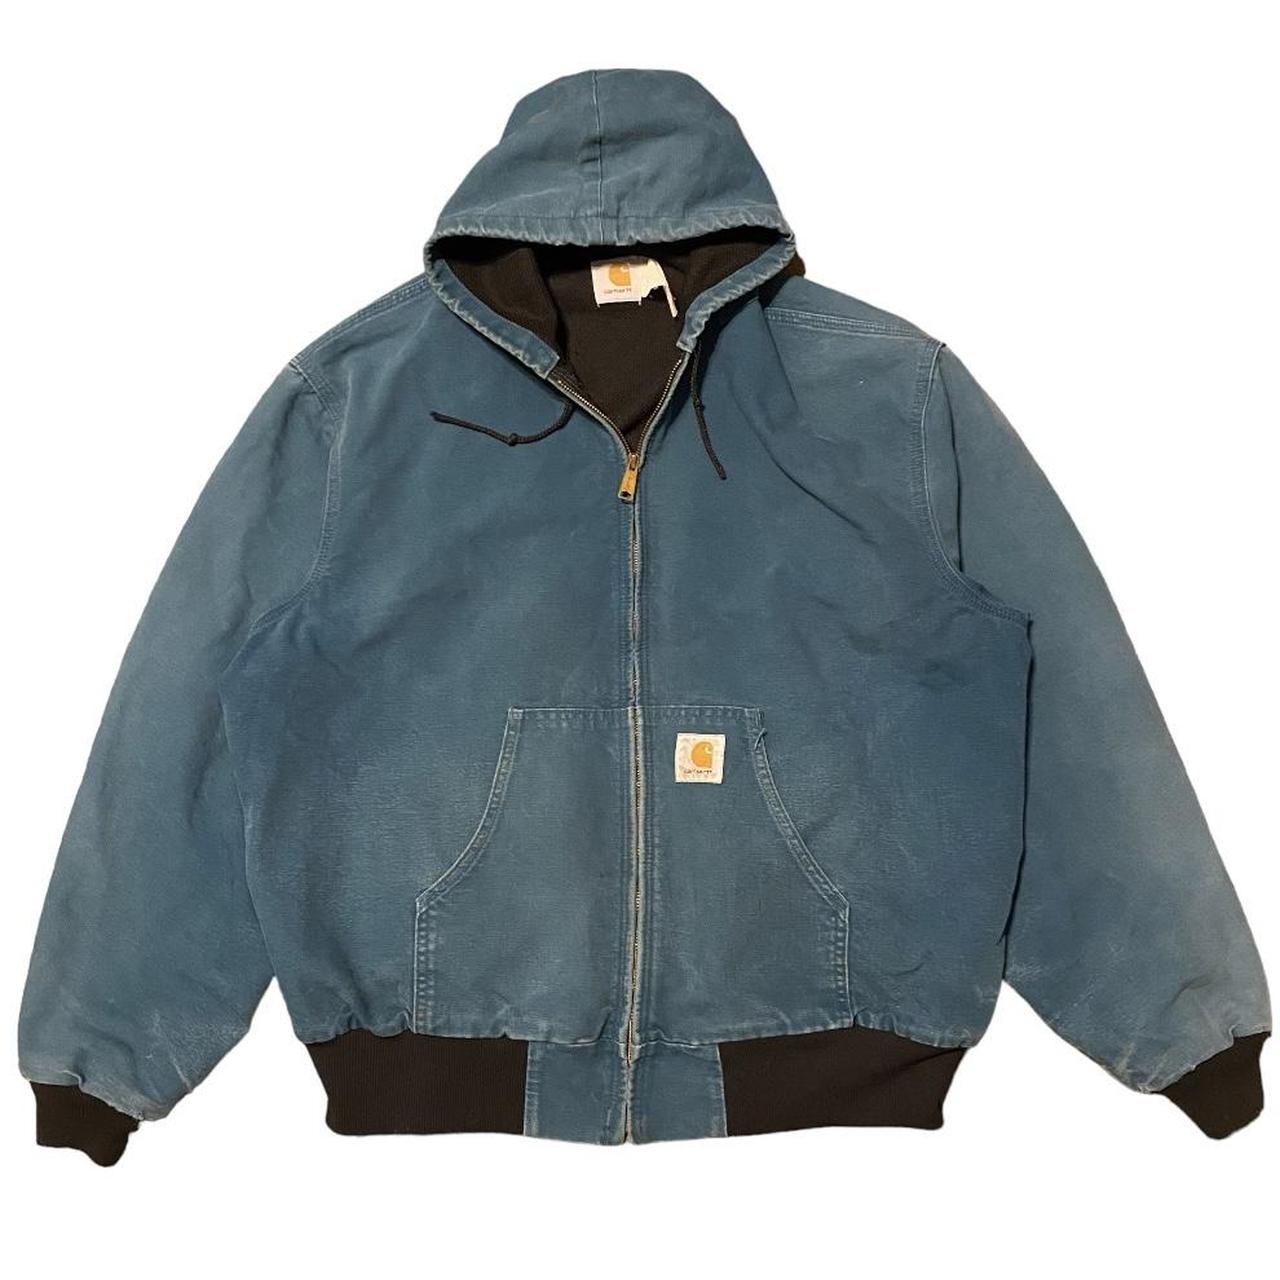 Vintage Carhartt Jacket Teal Rare Color Thermal... - Depop